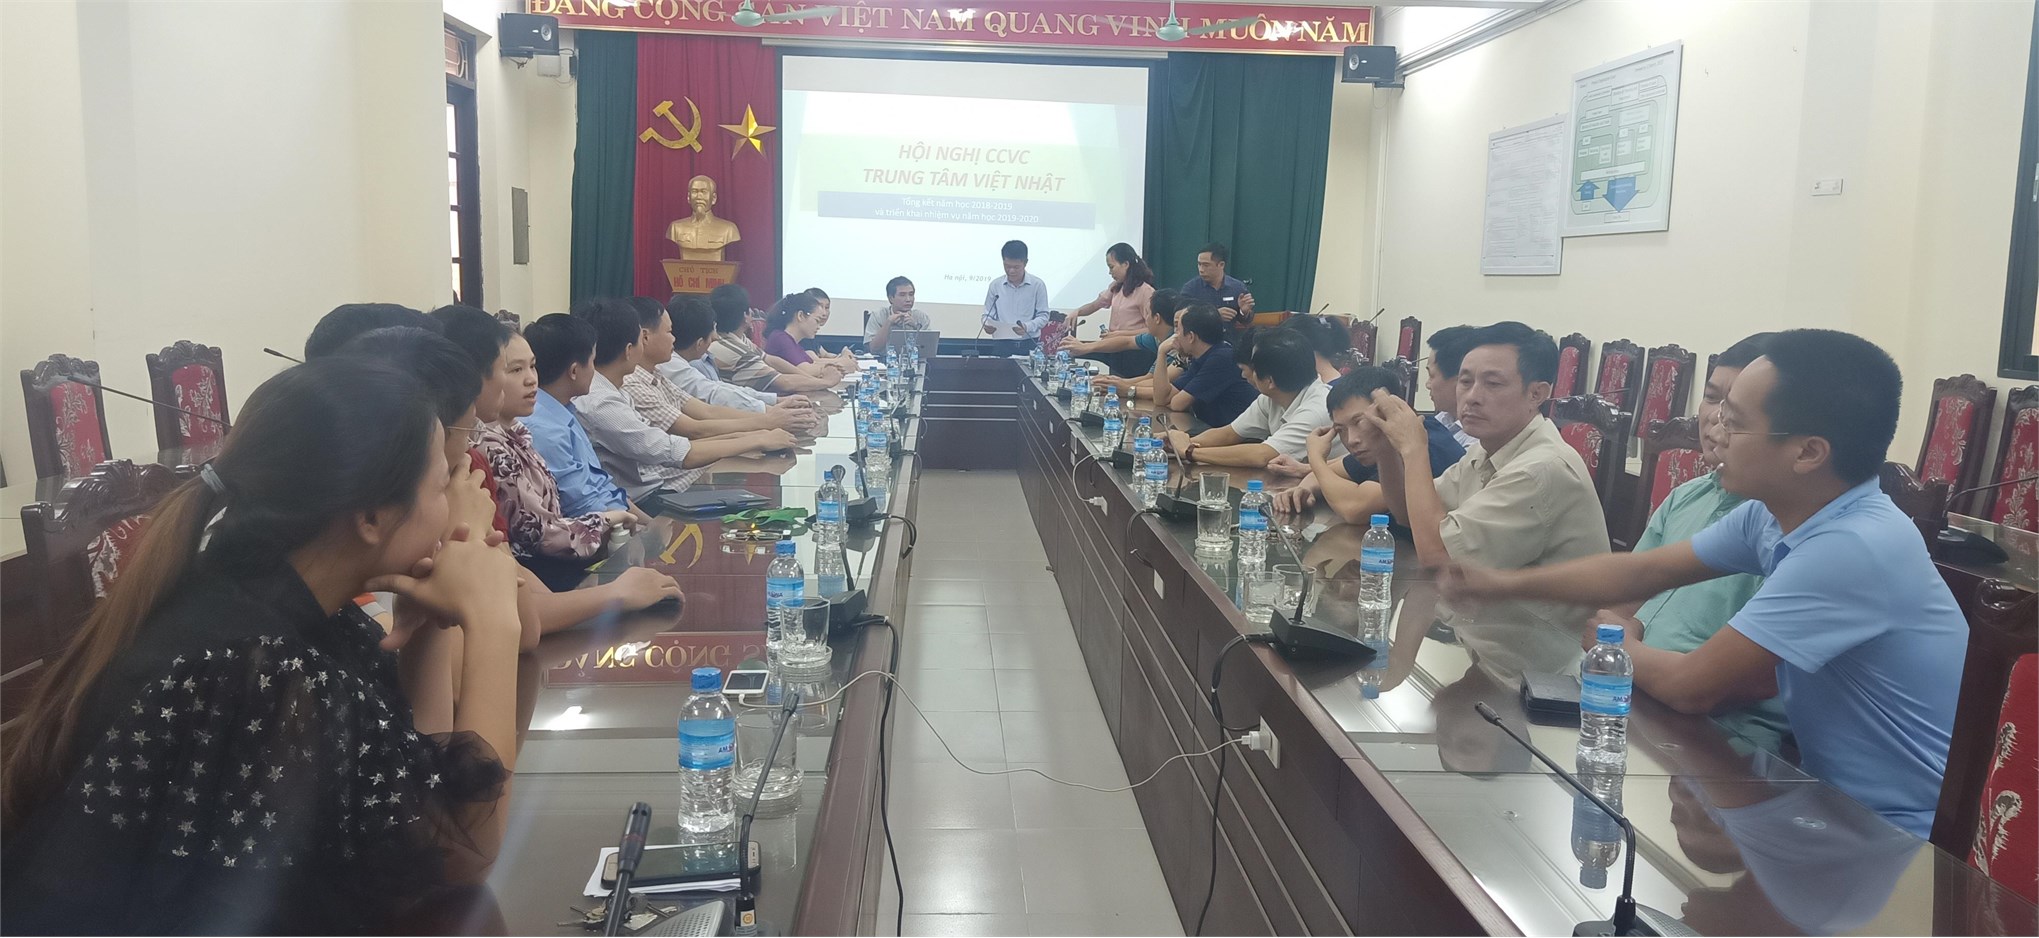 Hội nghị công chức viên chức năm học 2018 – 2019 của TT Việt Nhật